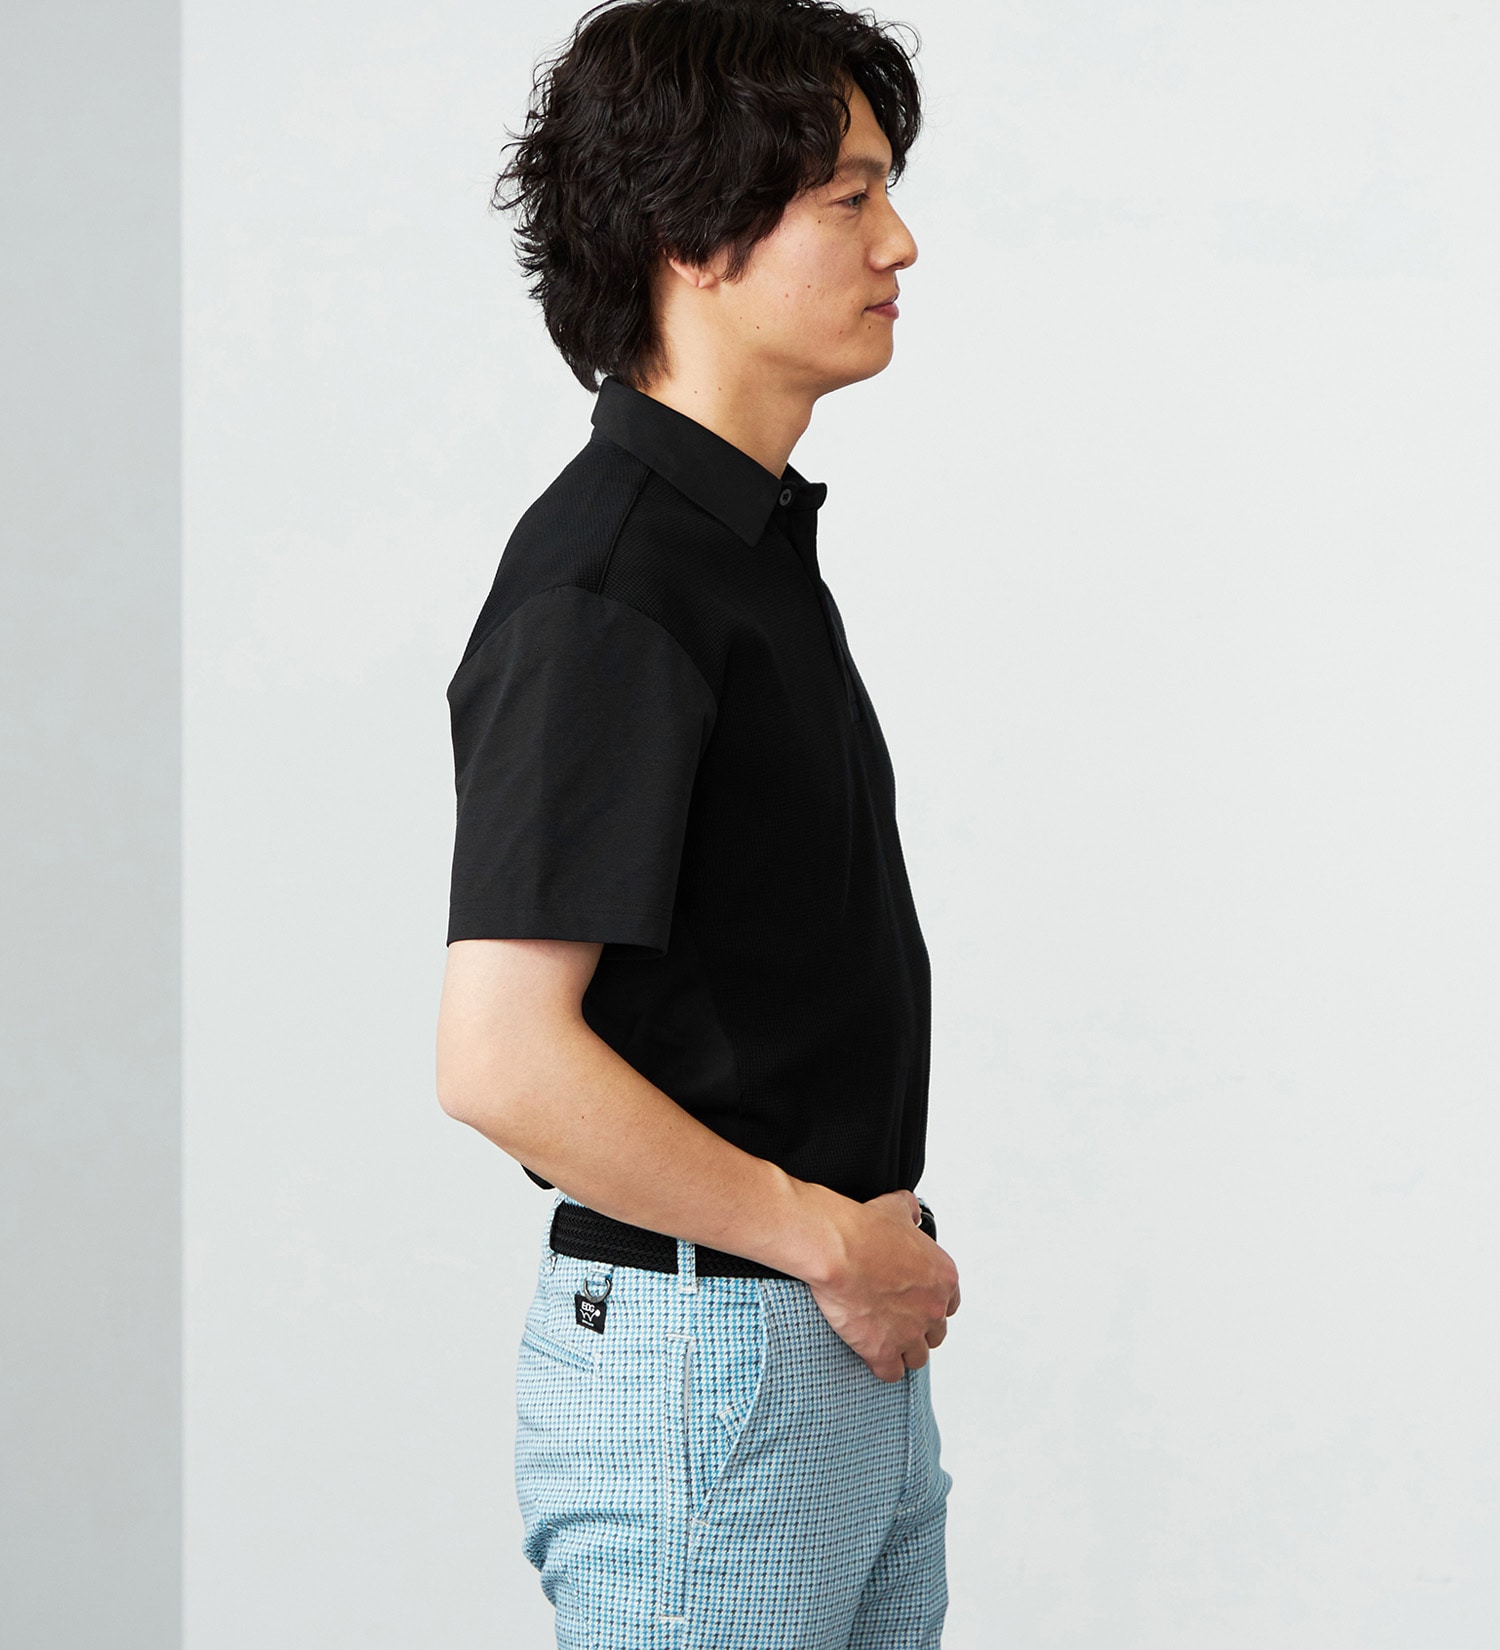 EDWIN(エドウイン)のEDWIN GOLF ミニワッフルポロシャツ半袖Tシャツ|トップス/Tシャツ/カットソー/メンズ|ブラック